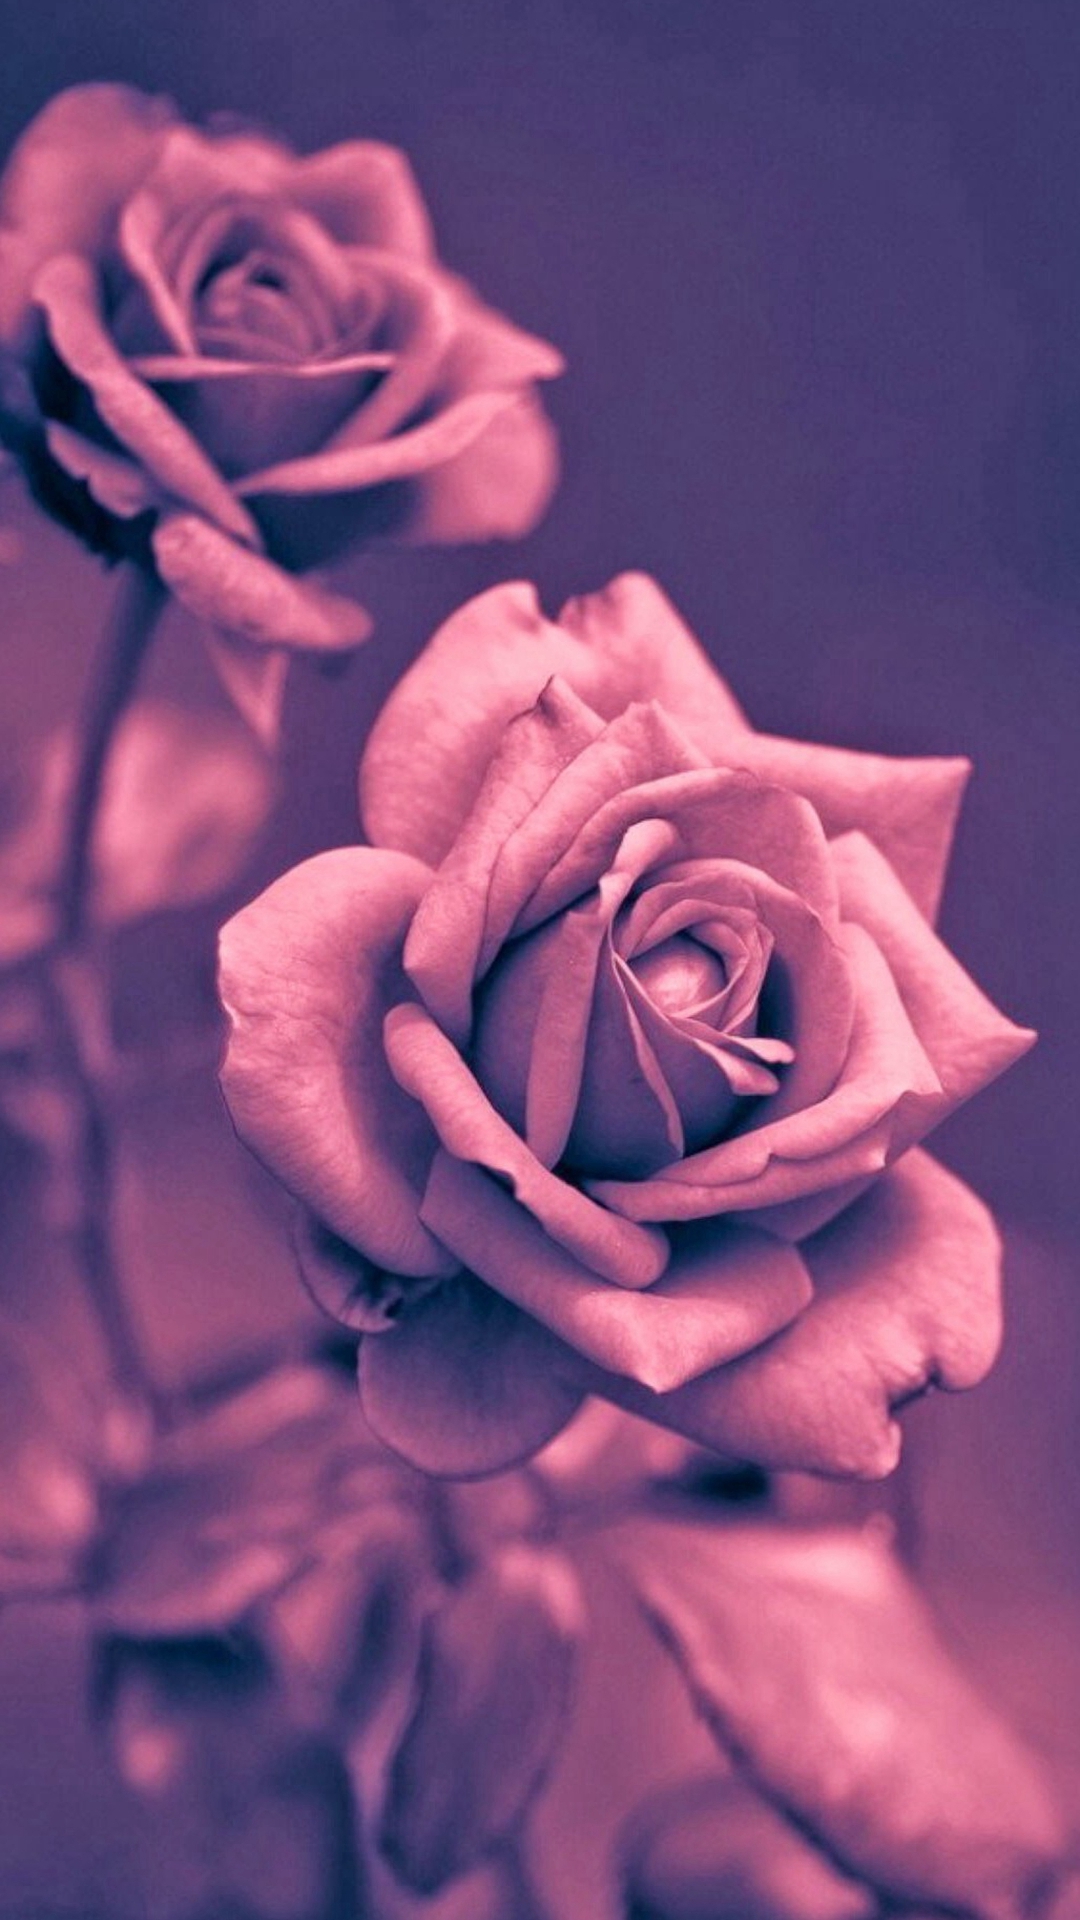 Beautiful Pink Rose Closeup iPhone 6 Wallpaper Download | iPhone ...